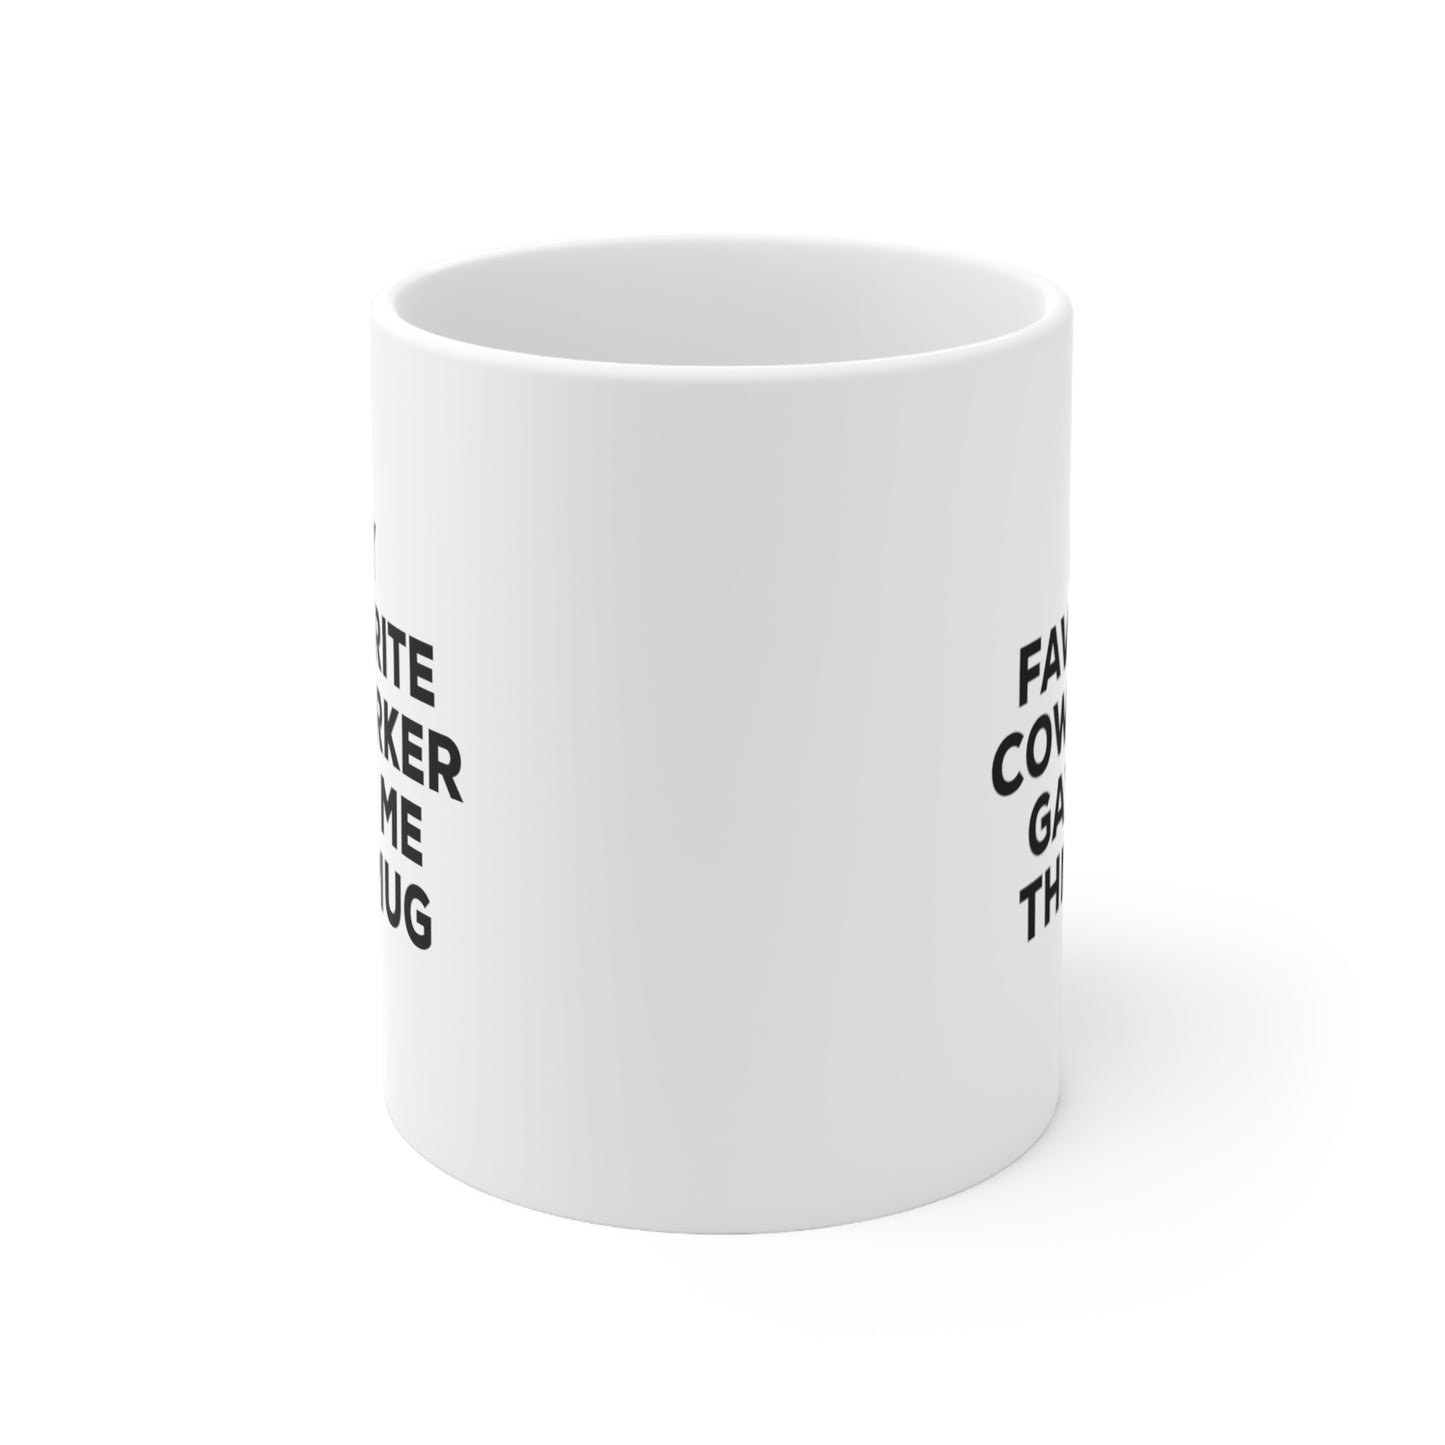 My Favorite Coworker Gave Me This Mug Coffee Cup 11oz